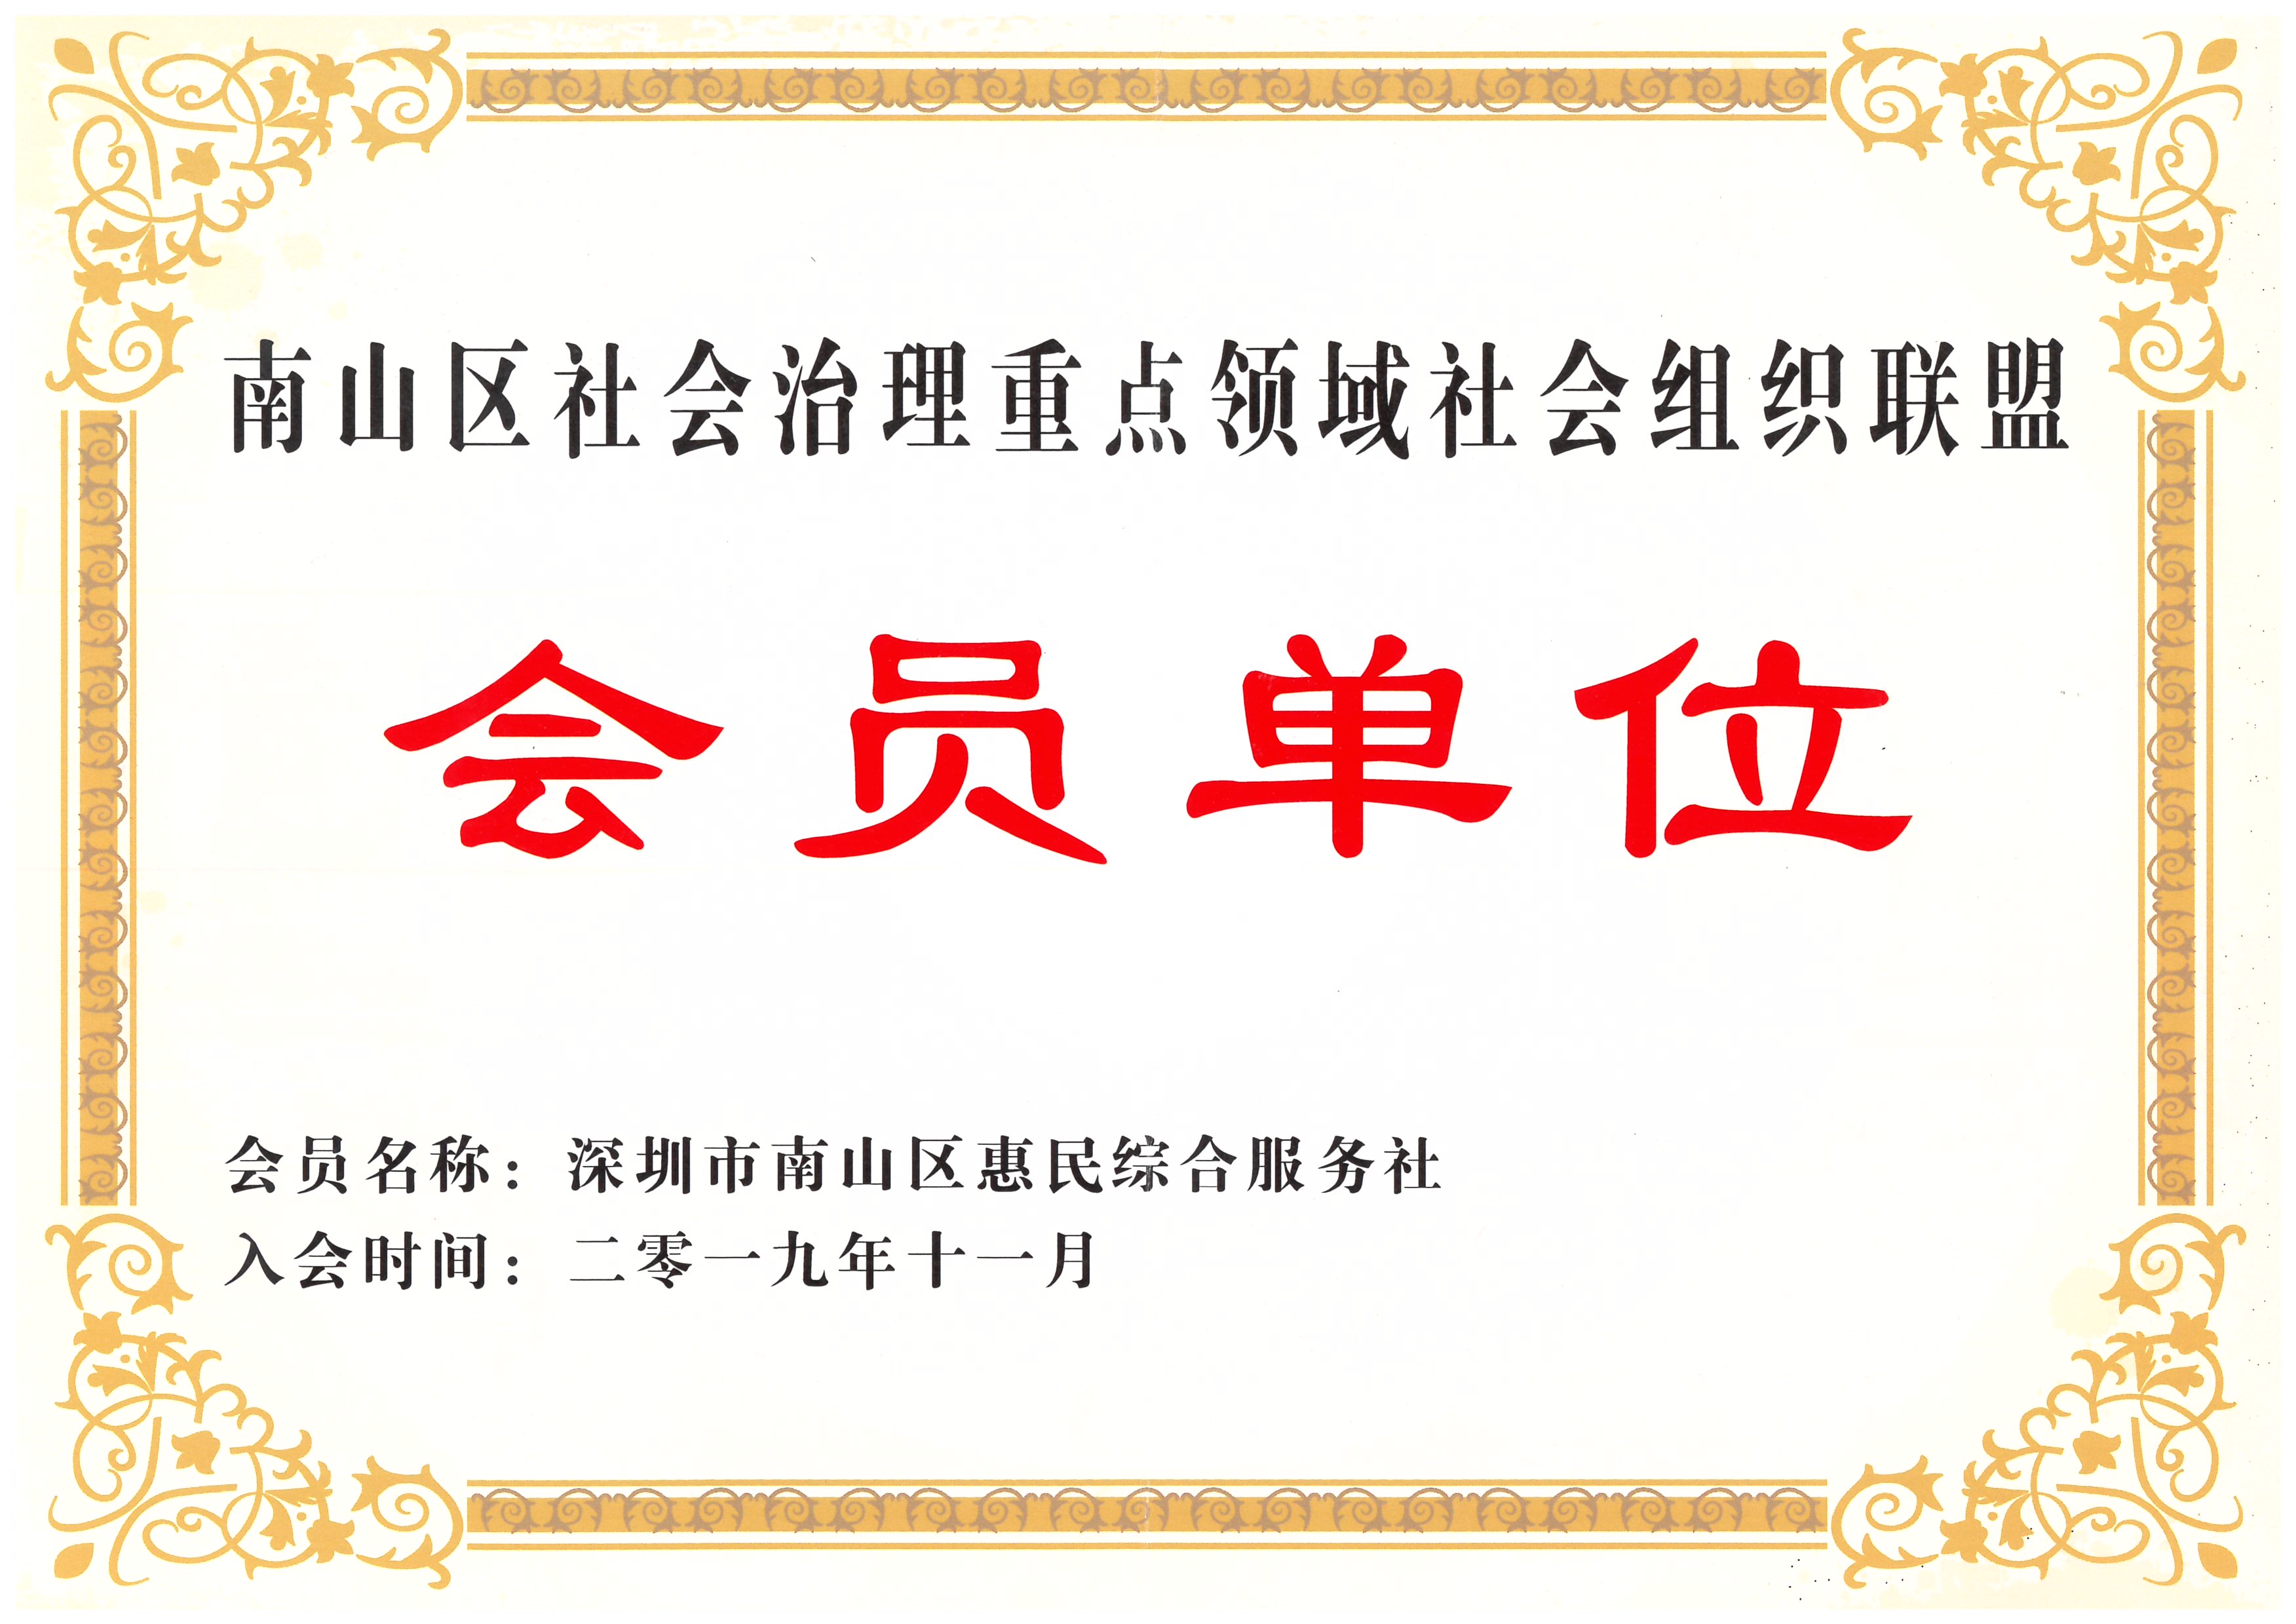 深圳市南山区社会治理重点领域社会组织联盟会员单位